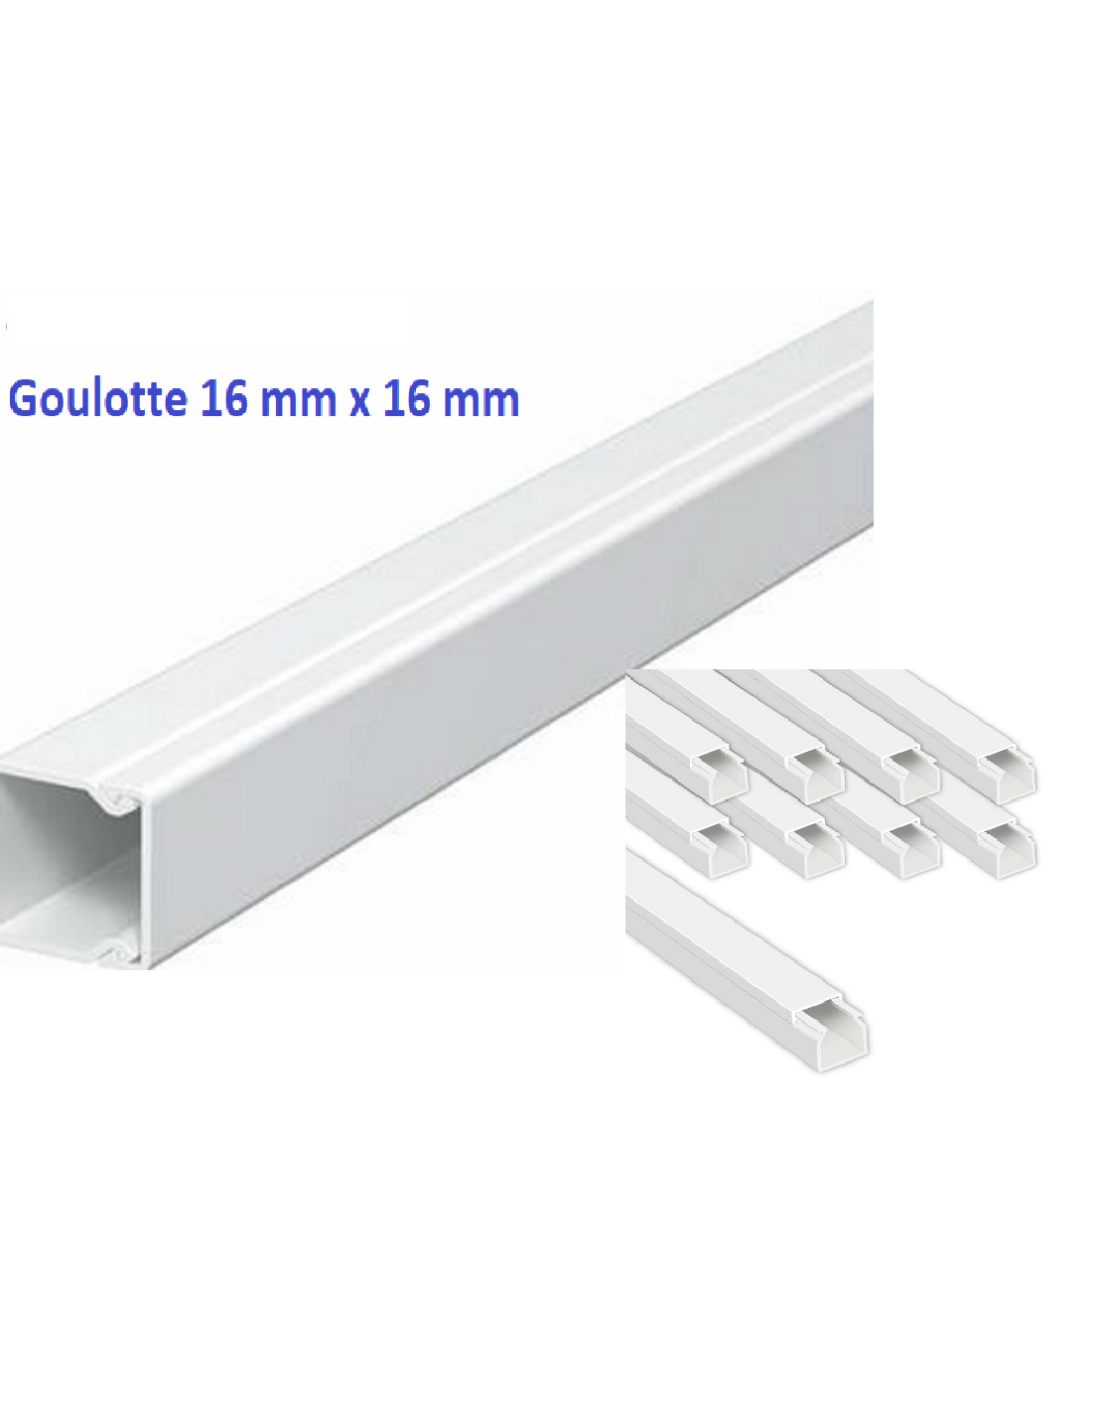 Destockage Goulotte, Plinthe & Moulure  Destockage materiel electrique  chez bis-electric